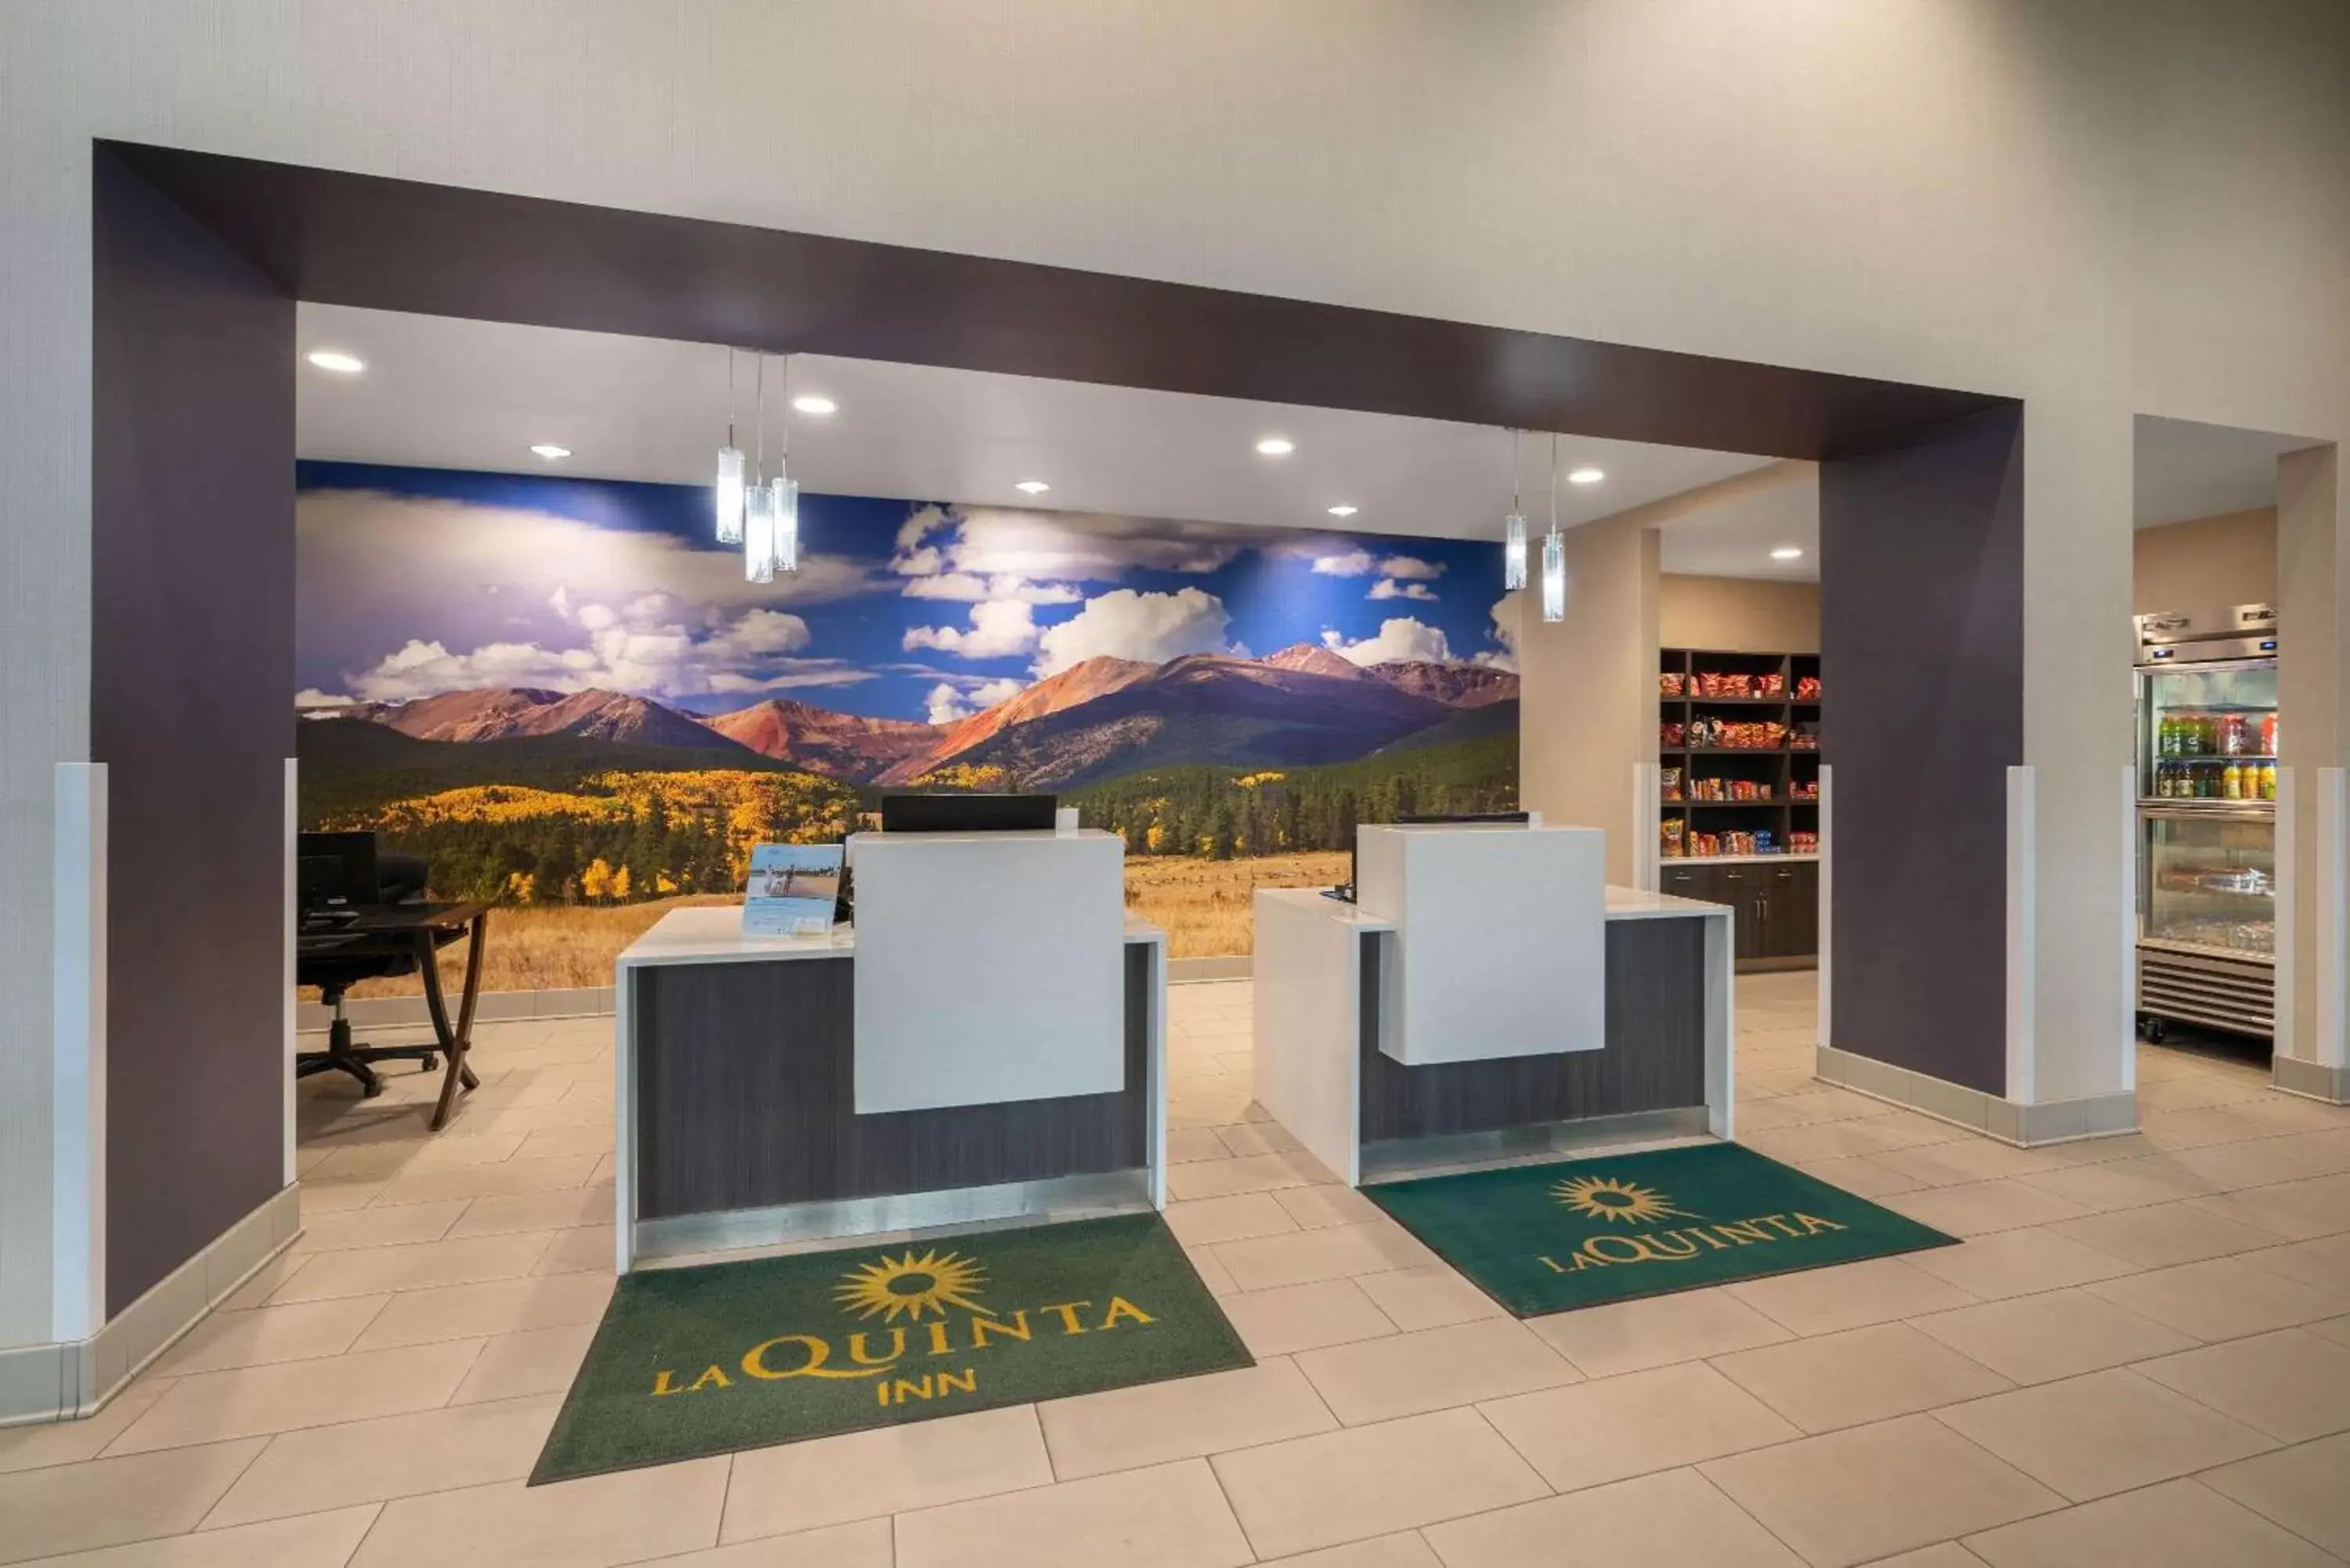 Lobby or reception in La Quinta Inn & Suites by Wyndham Fort Collins, Colorado